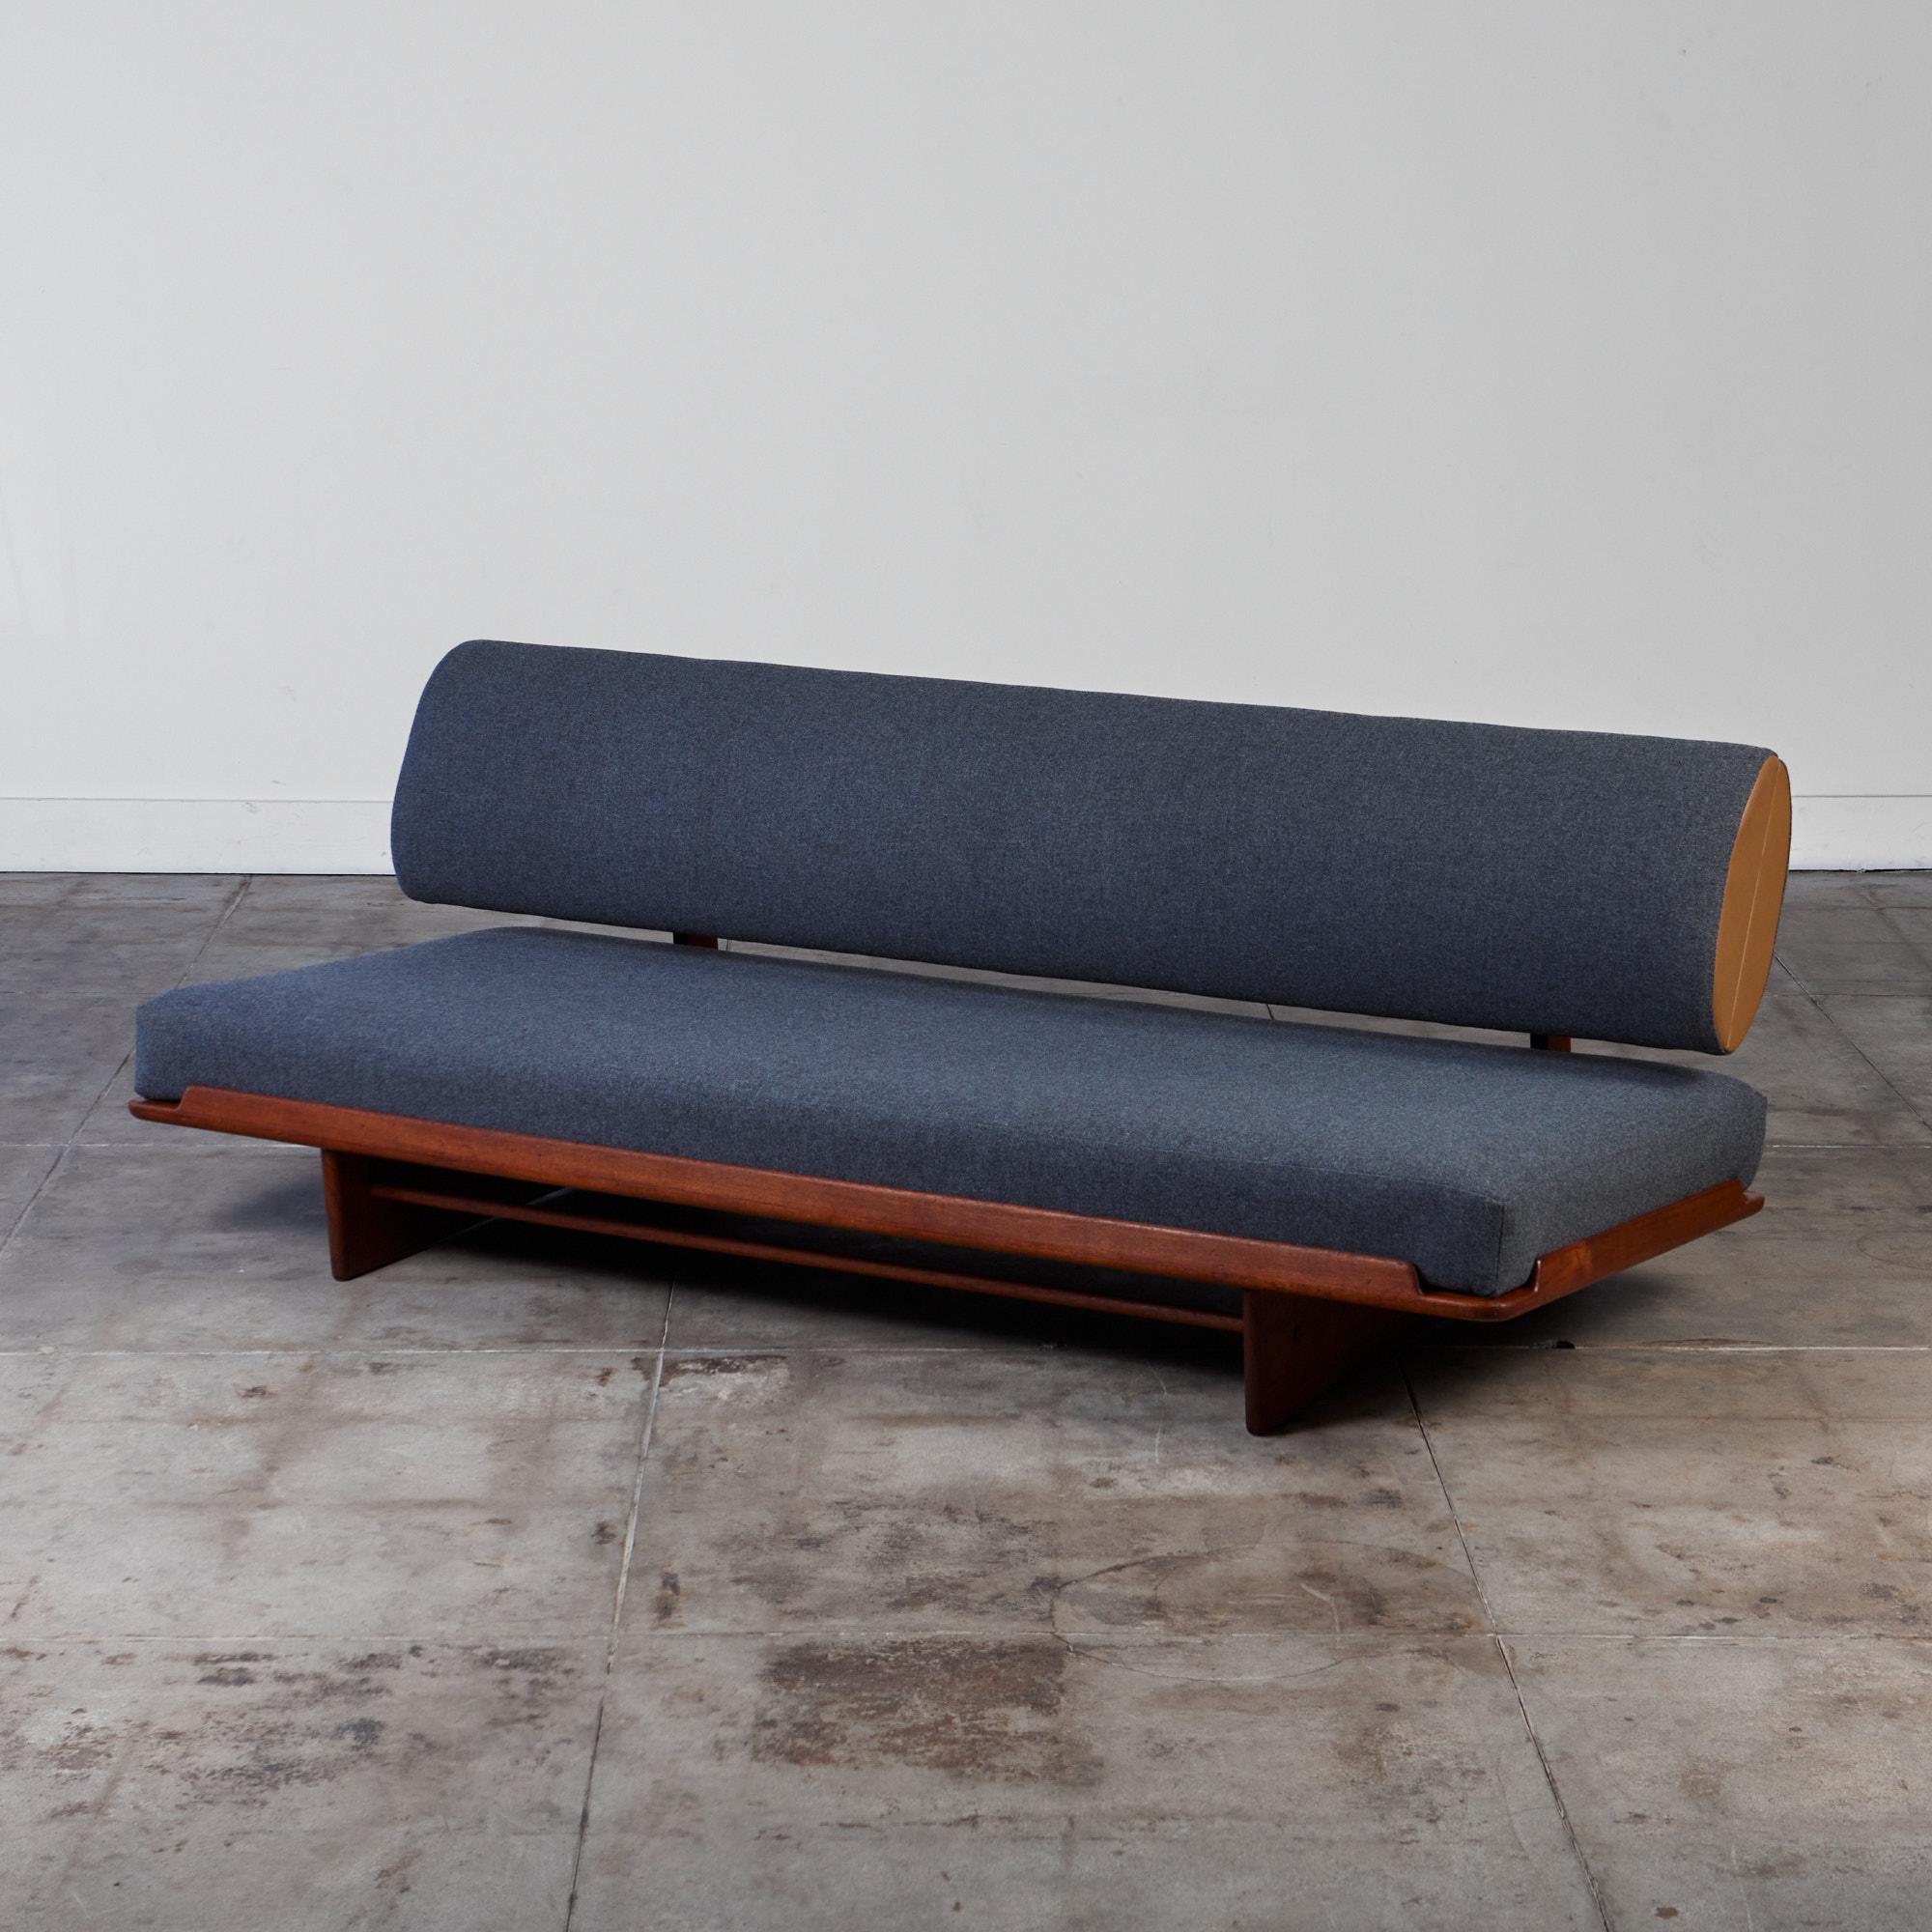 Seltene Schlafcouch aus Teakholz von Grete Jalk für Poul Jeppesen, ca. 1960er Jahre. Dieses Stück zeichnet sich durch einzigartige Designelemente aus, die es zu einem idealen Tagesbett machen. Das breite Sitzkissen kann sanft herausgezogen werden,